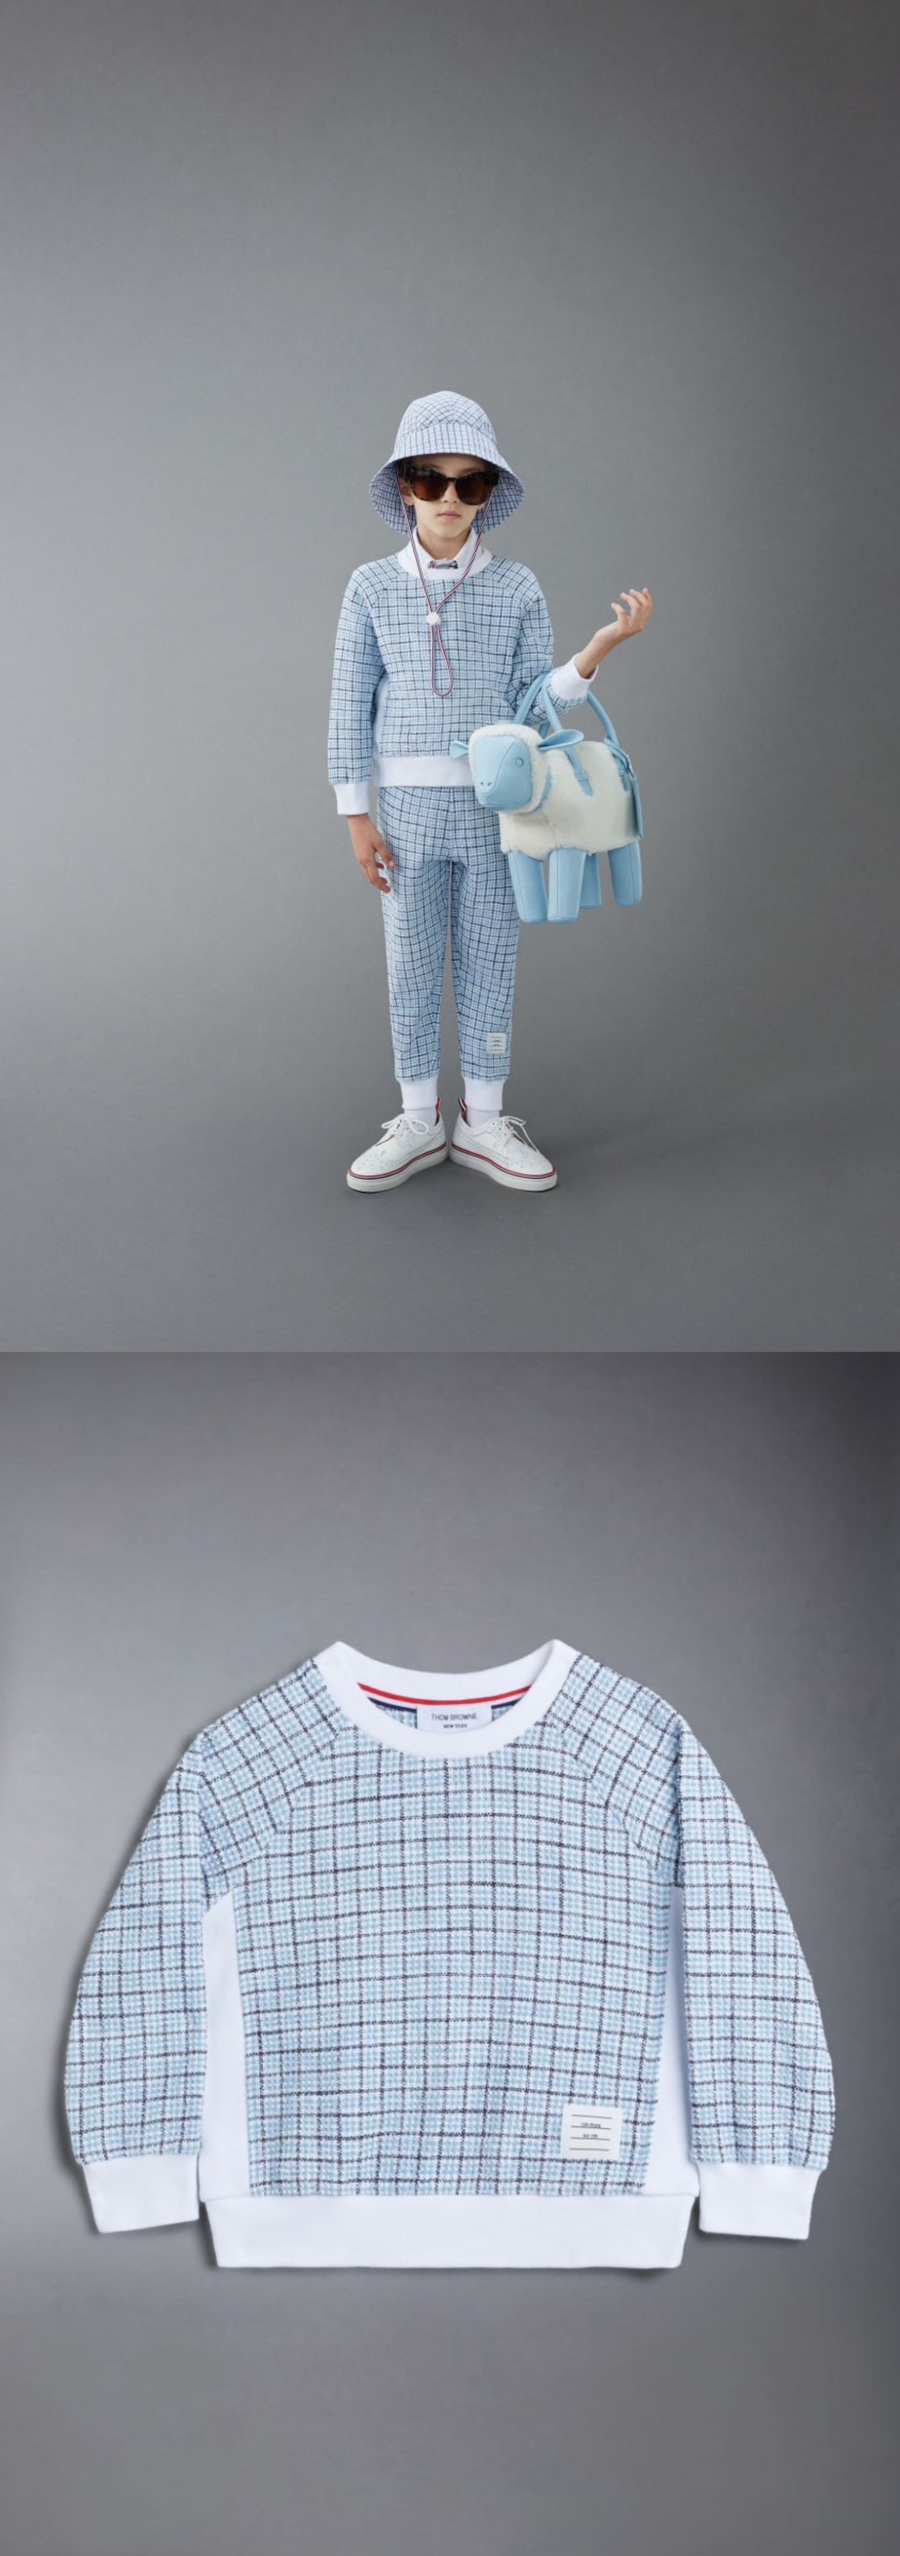 톰 브라운 현대백화점본점 팝업스토어 남아 여아옷 아동복 브랜드 어린이날선물로 준비해요!